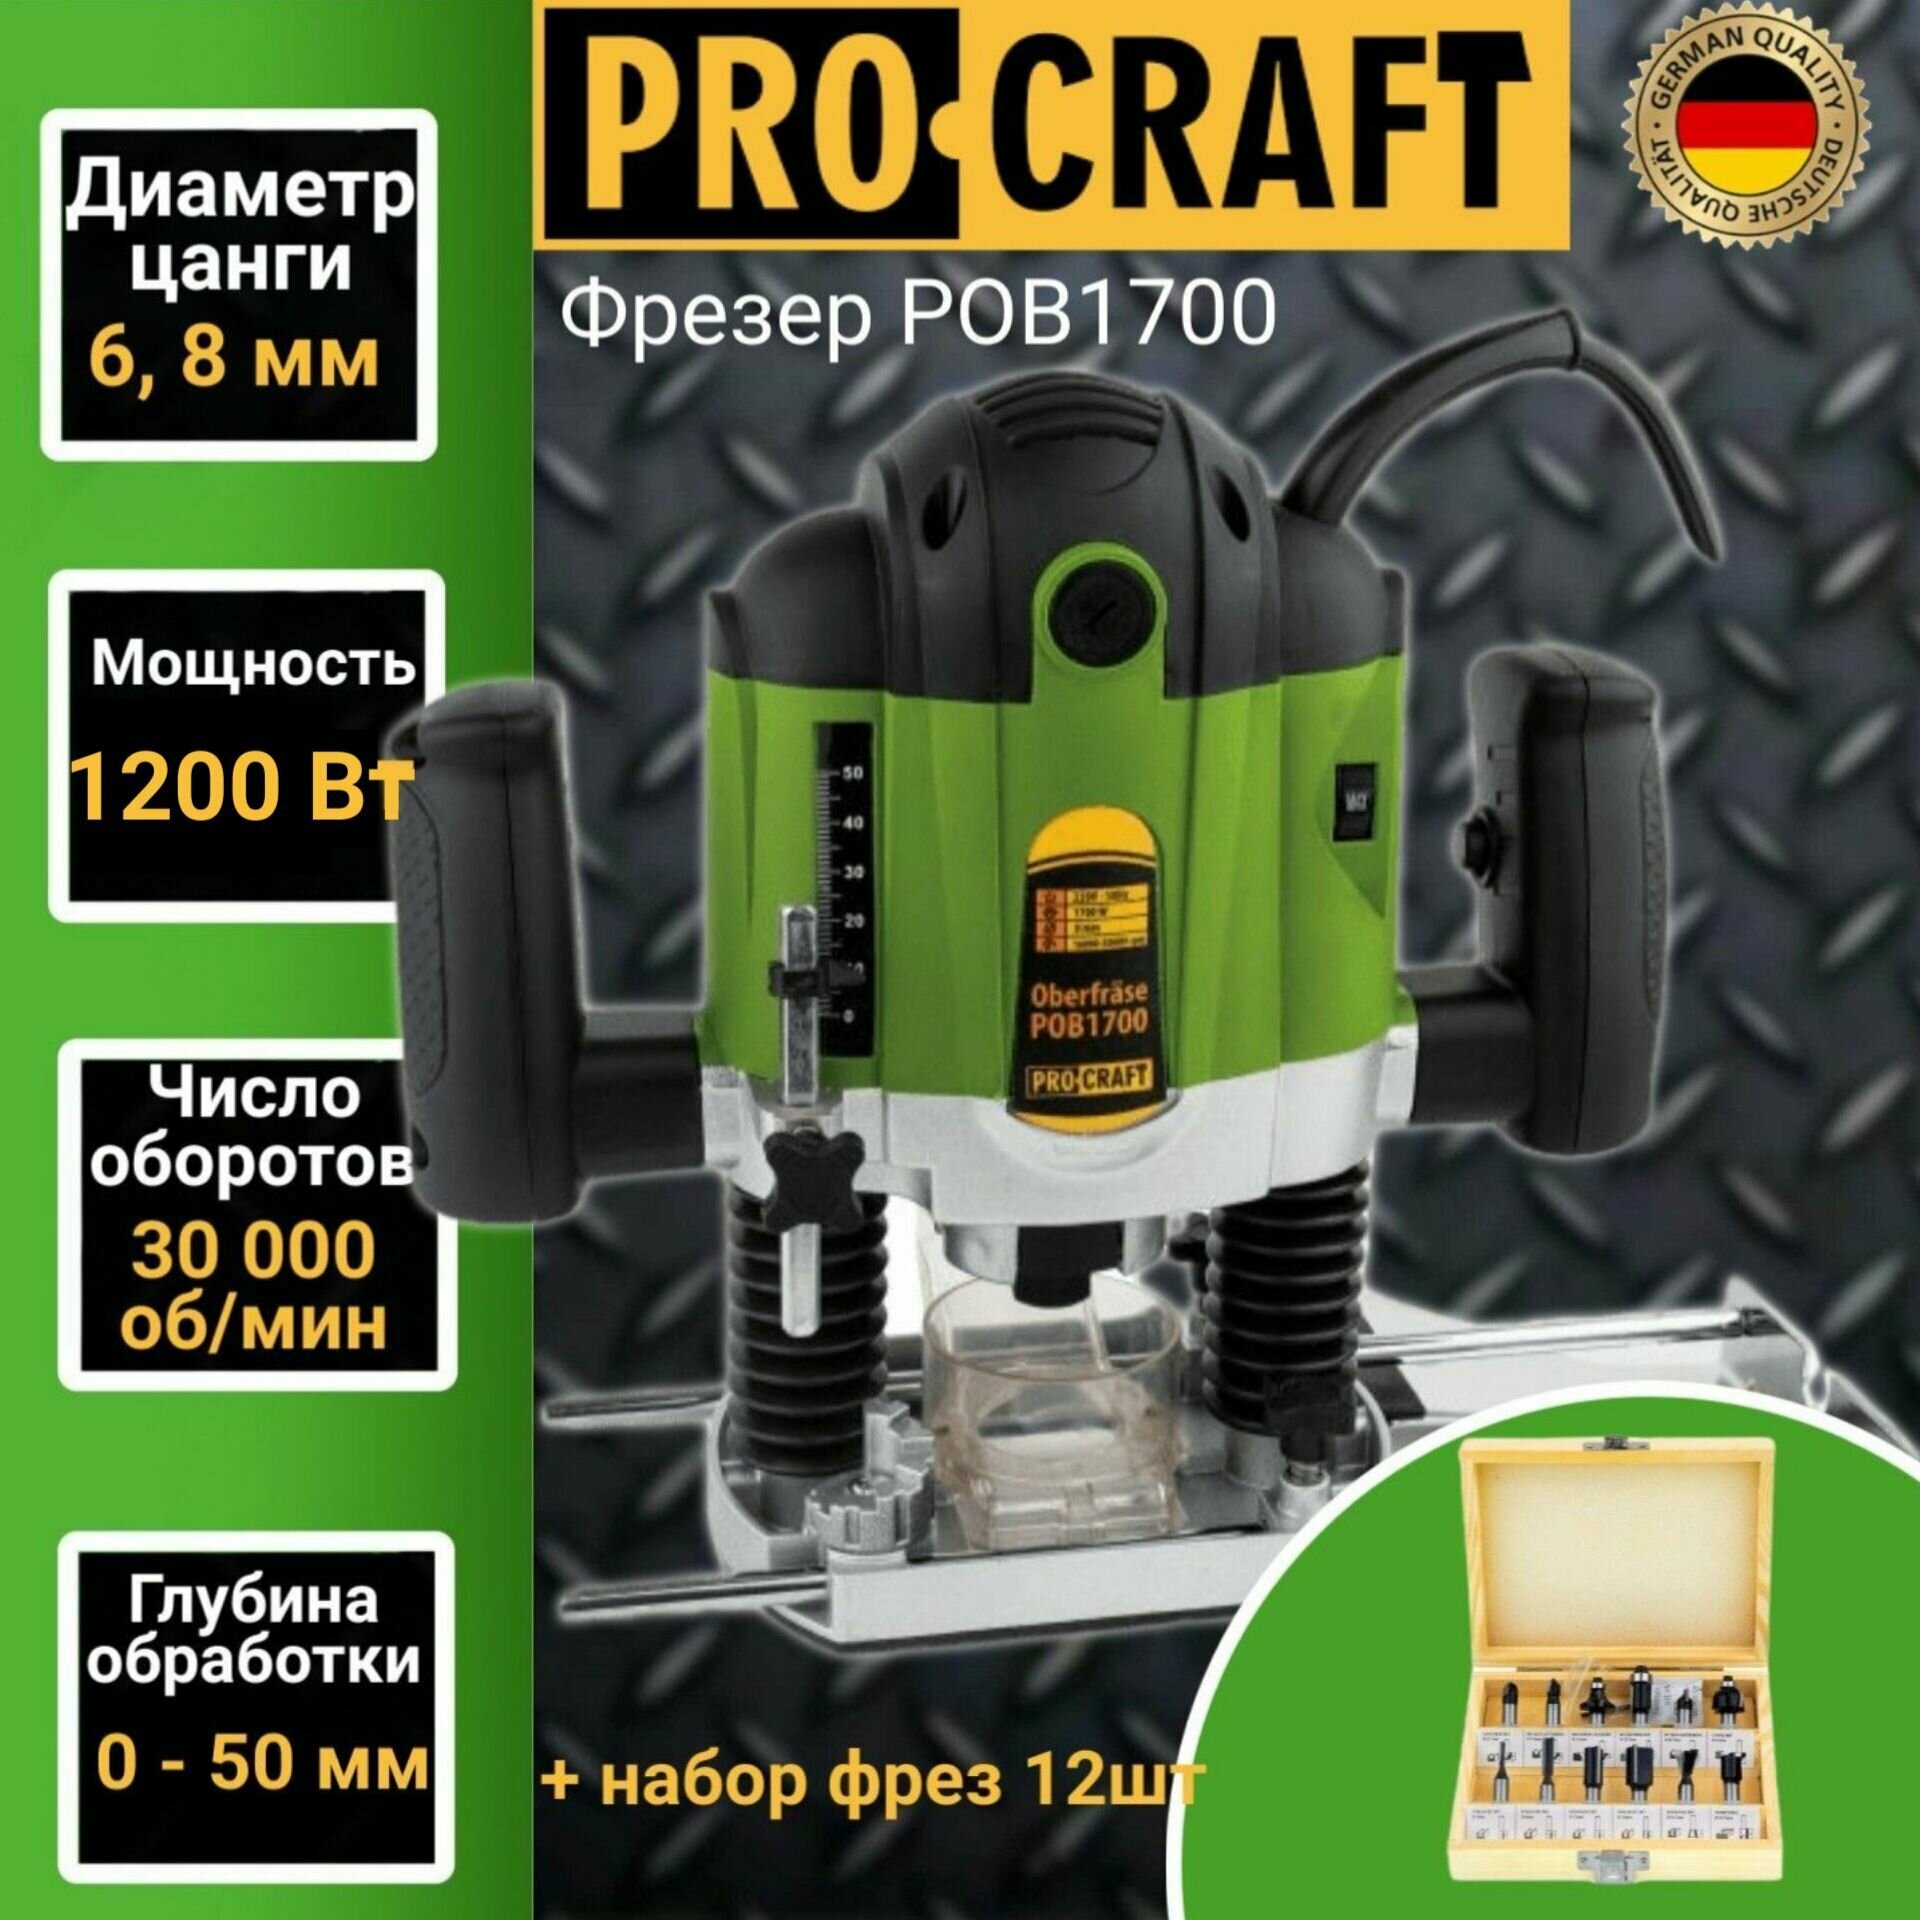 Фрезер электрический Procraft POB-1700 (набор фрез 12шт) цанга 6/8мм 1200Вт 30000об/мин